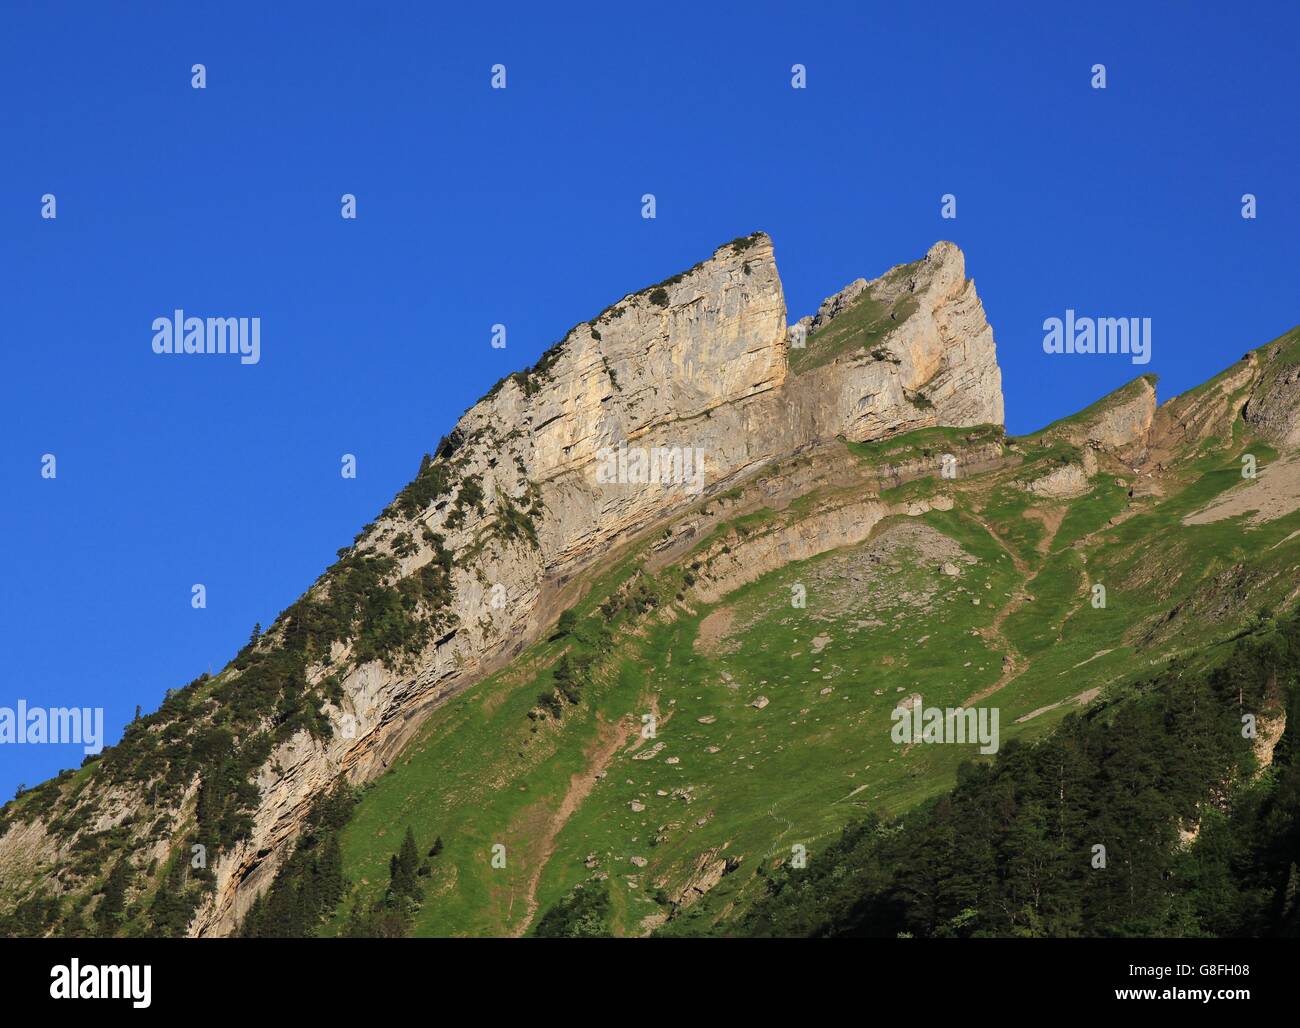 Scène dans les Alpes suisses. Plis alpins visibles. Banque D'Images